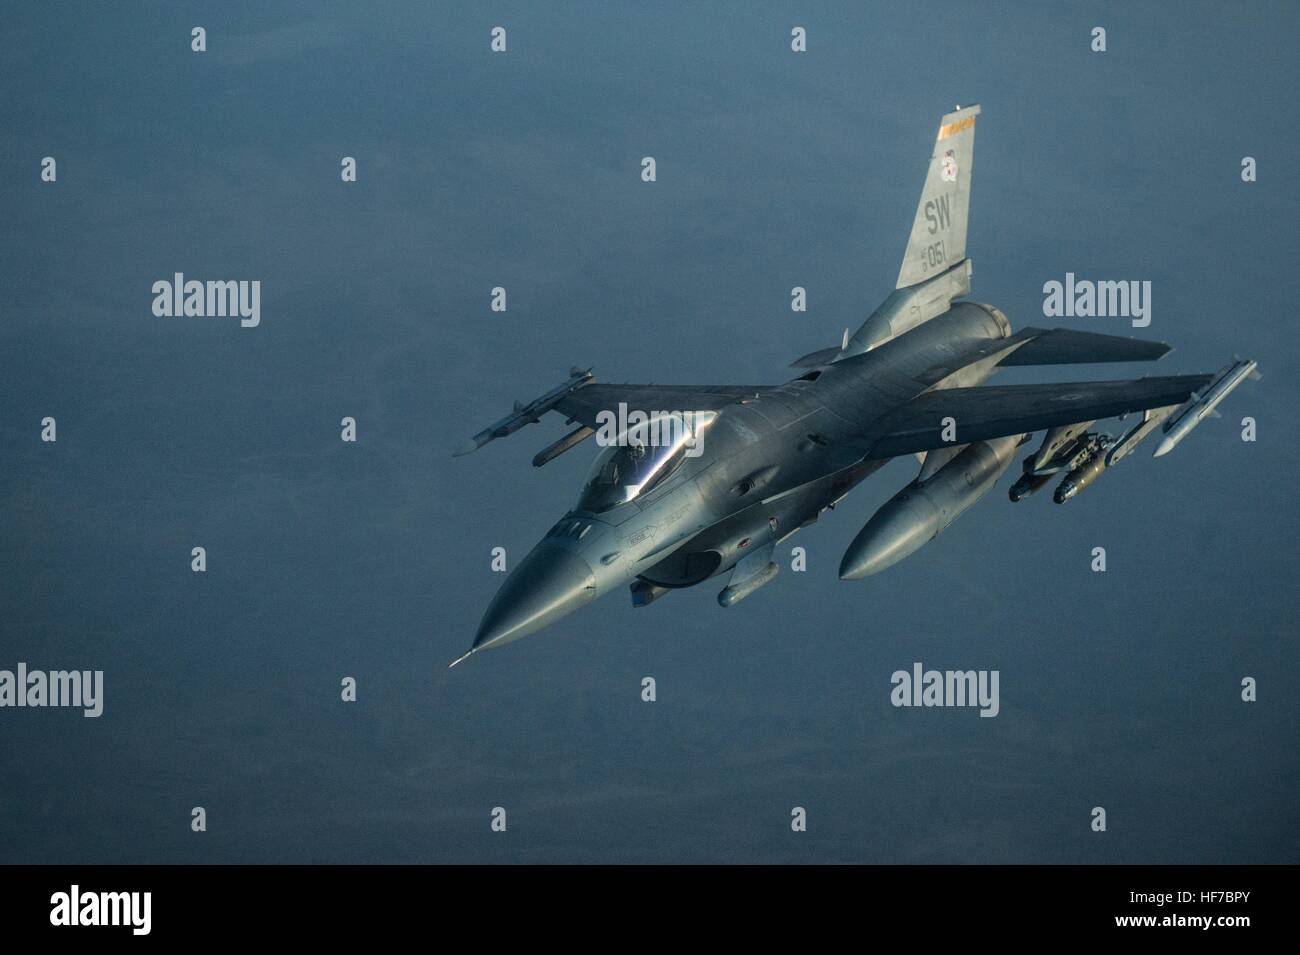 Un General Dynamics F-16 Fighting Falcon fighter aircraft vola durante il funzionamento la libertà Sentinel Dicembre 21, 2016 in Afghanistan. (Foto di Matteo B. Fredericks /US Air Force via Planetpix) Foto Stock